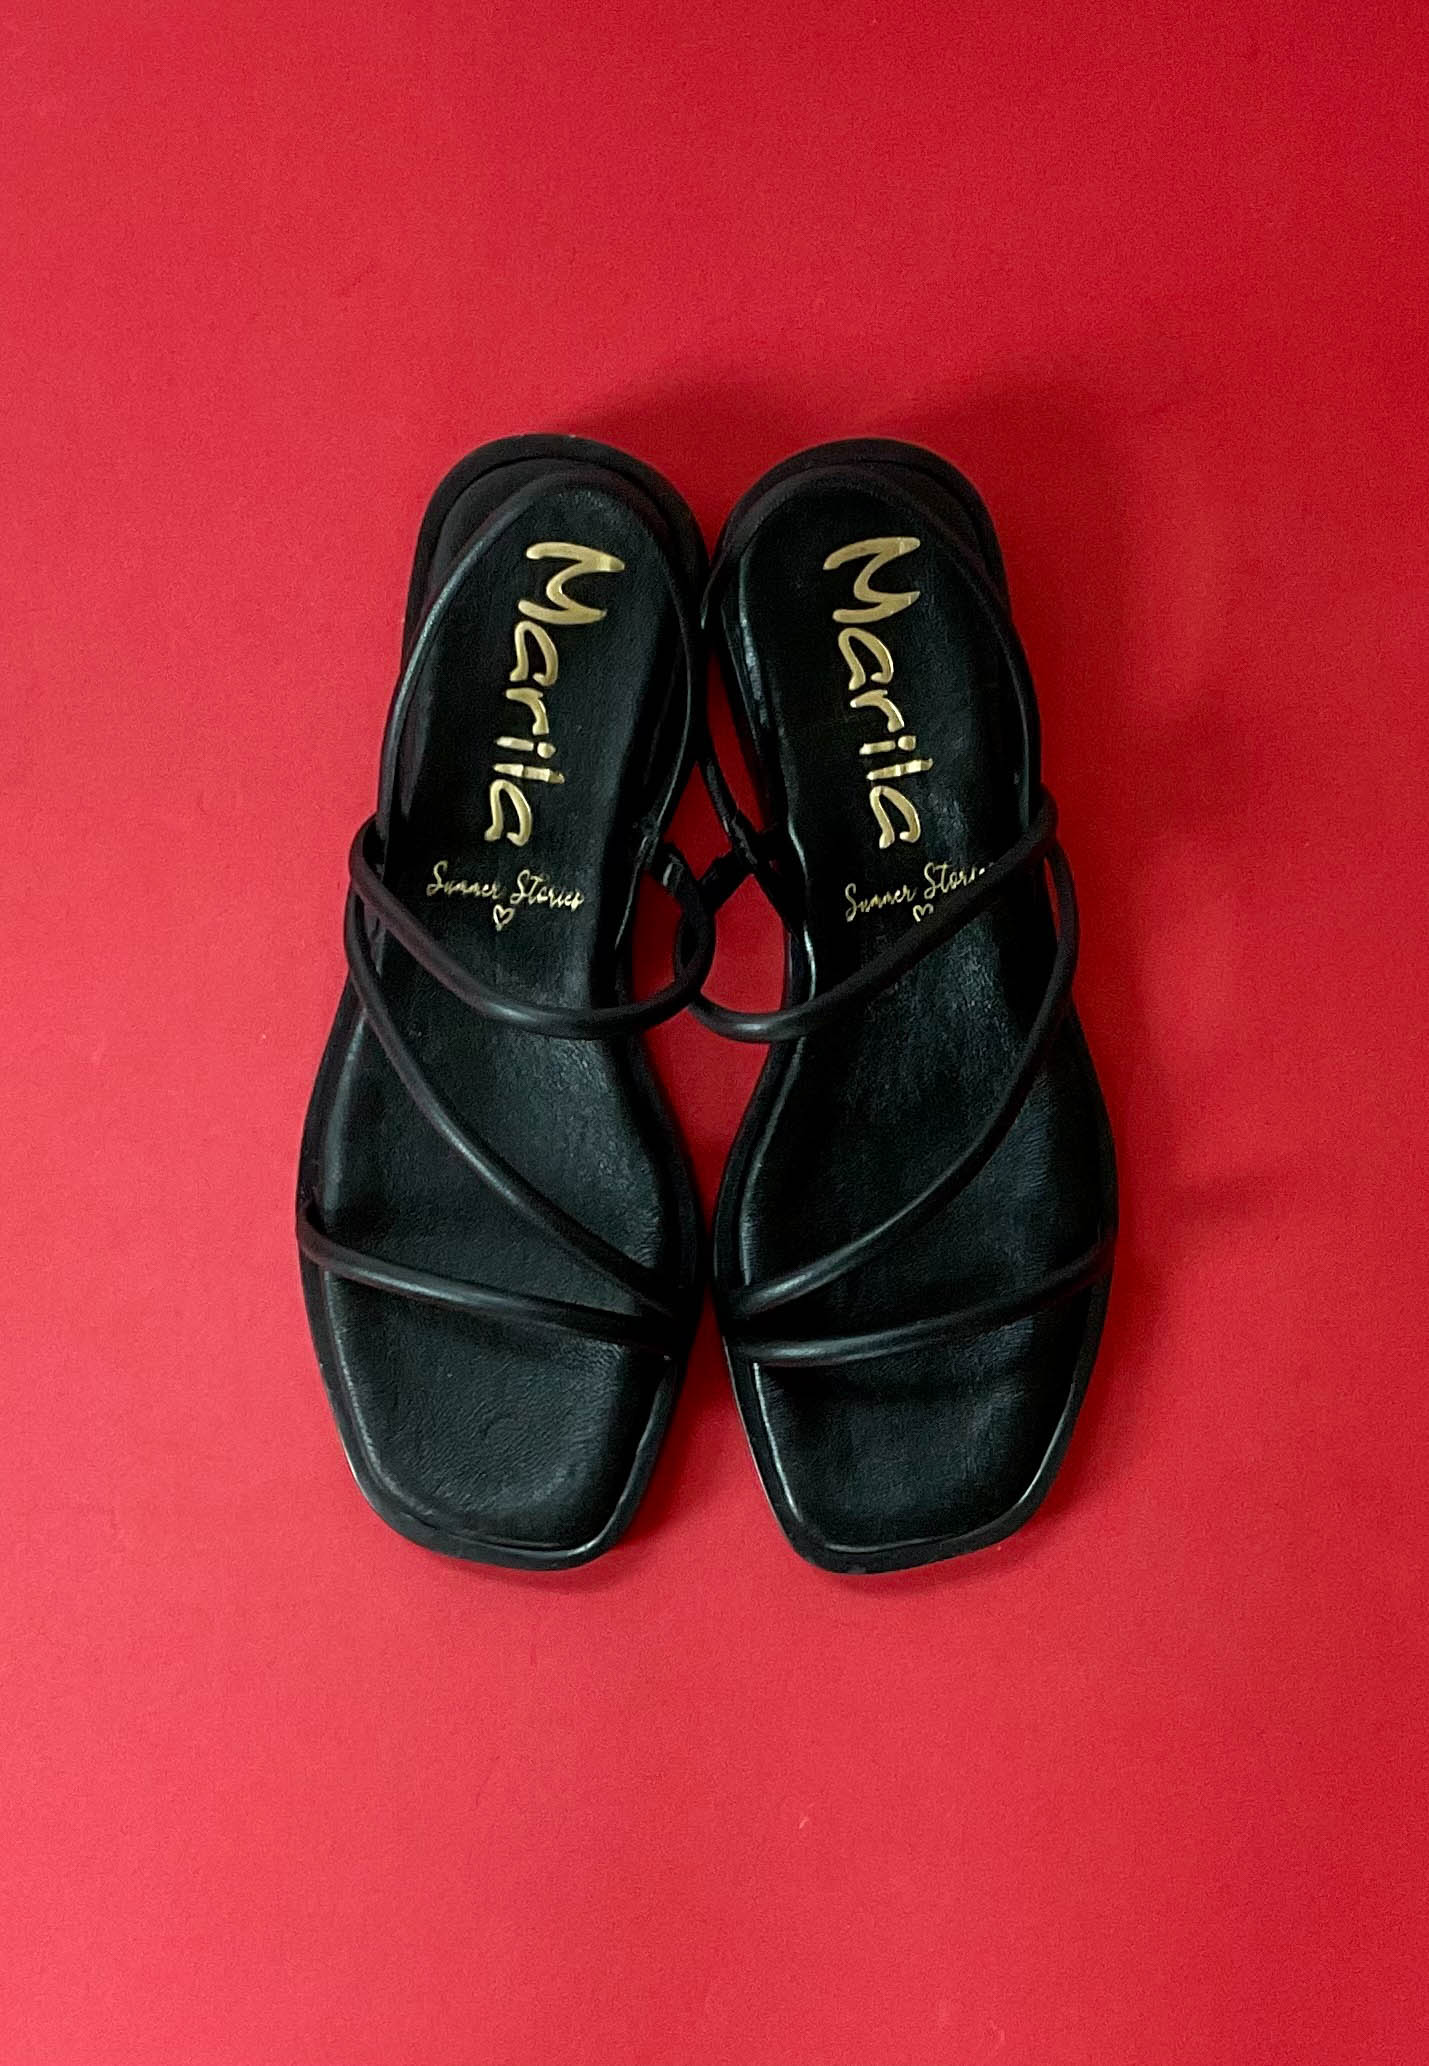 marila black ladies sandals